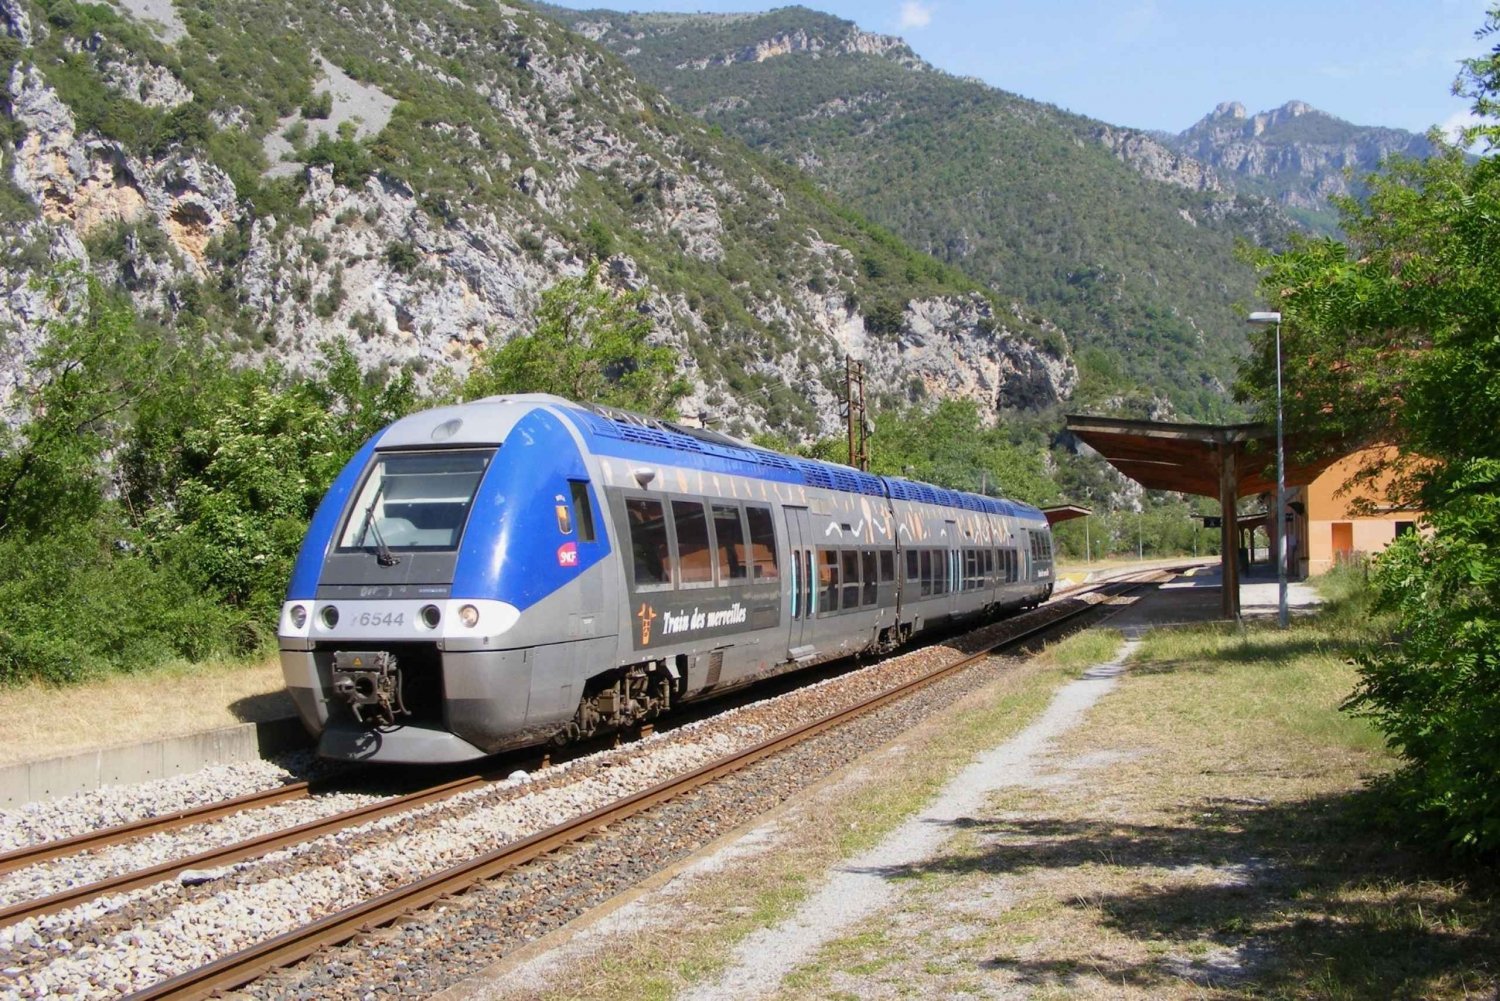 Vanuit Nice: treinbelevenis door de Alpen & Barokroute